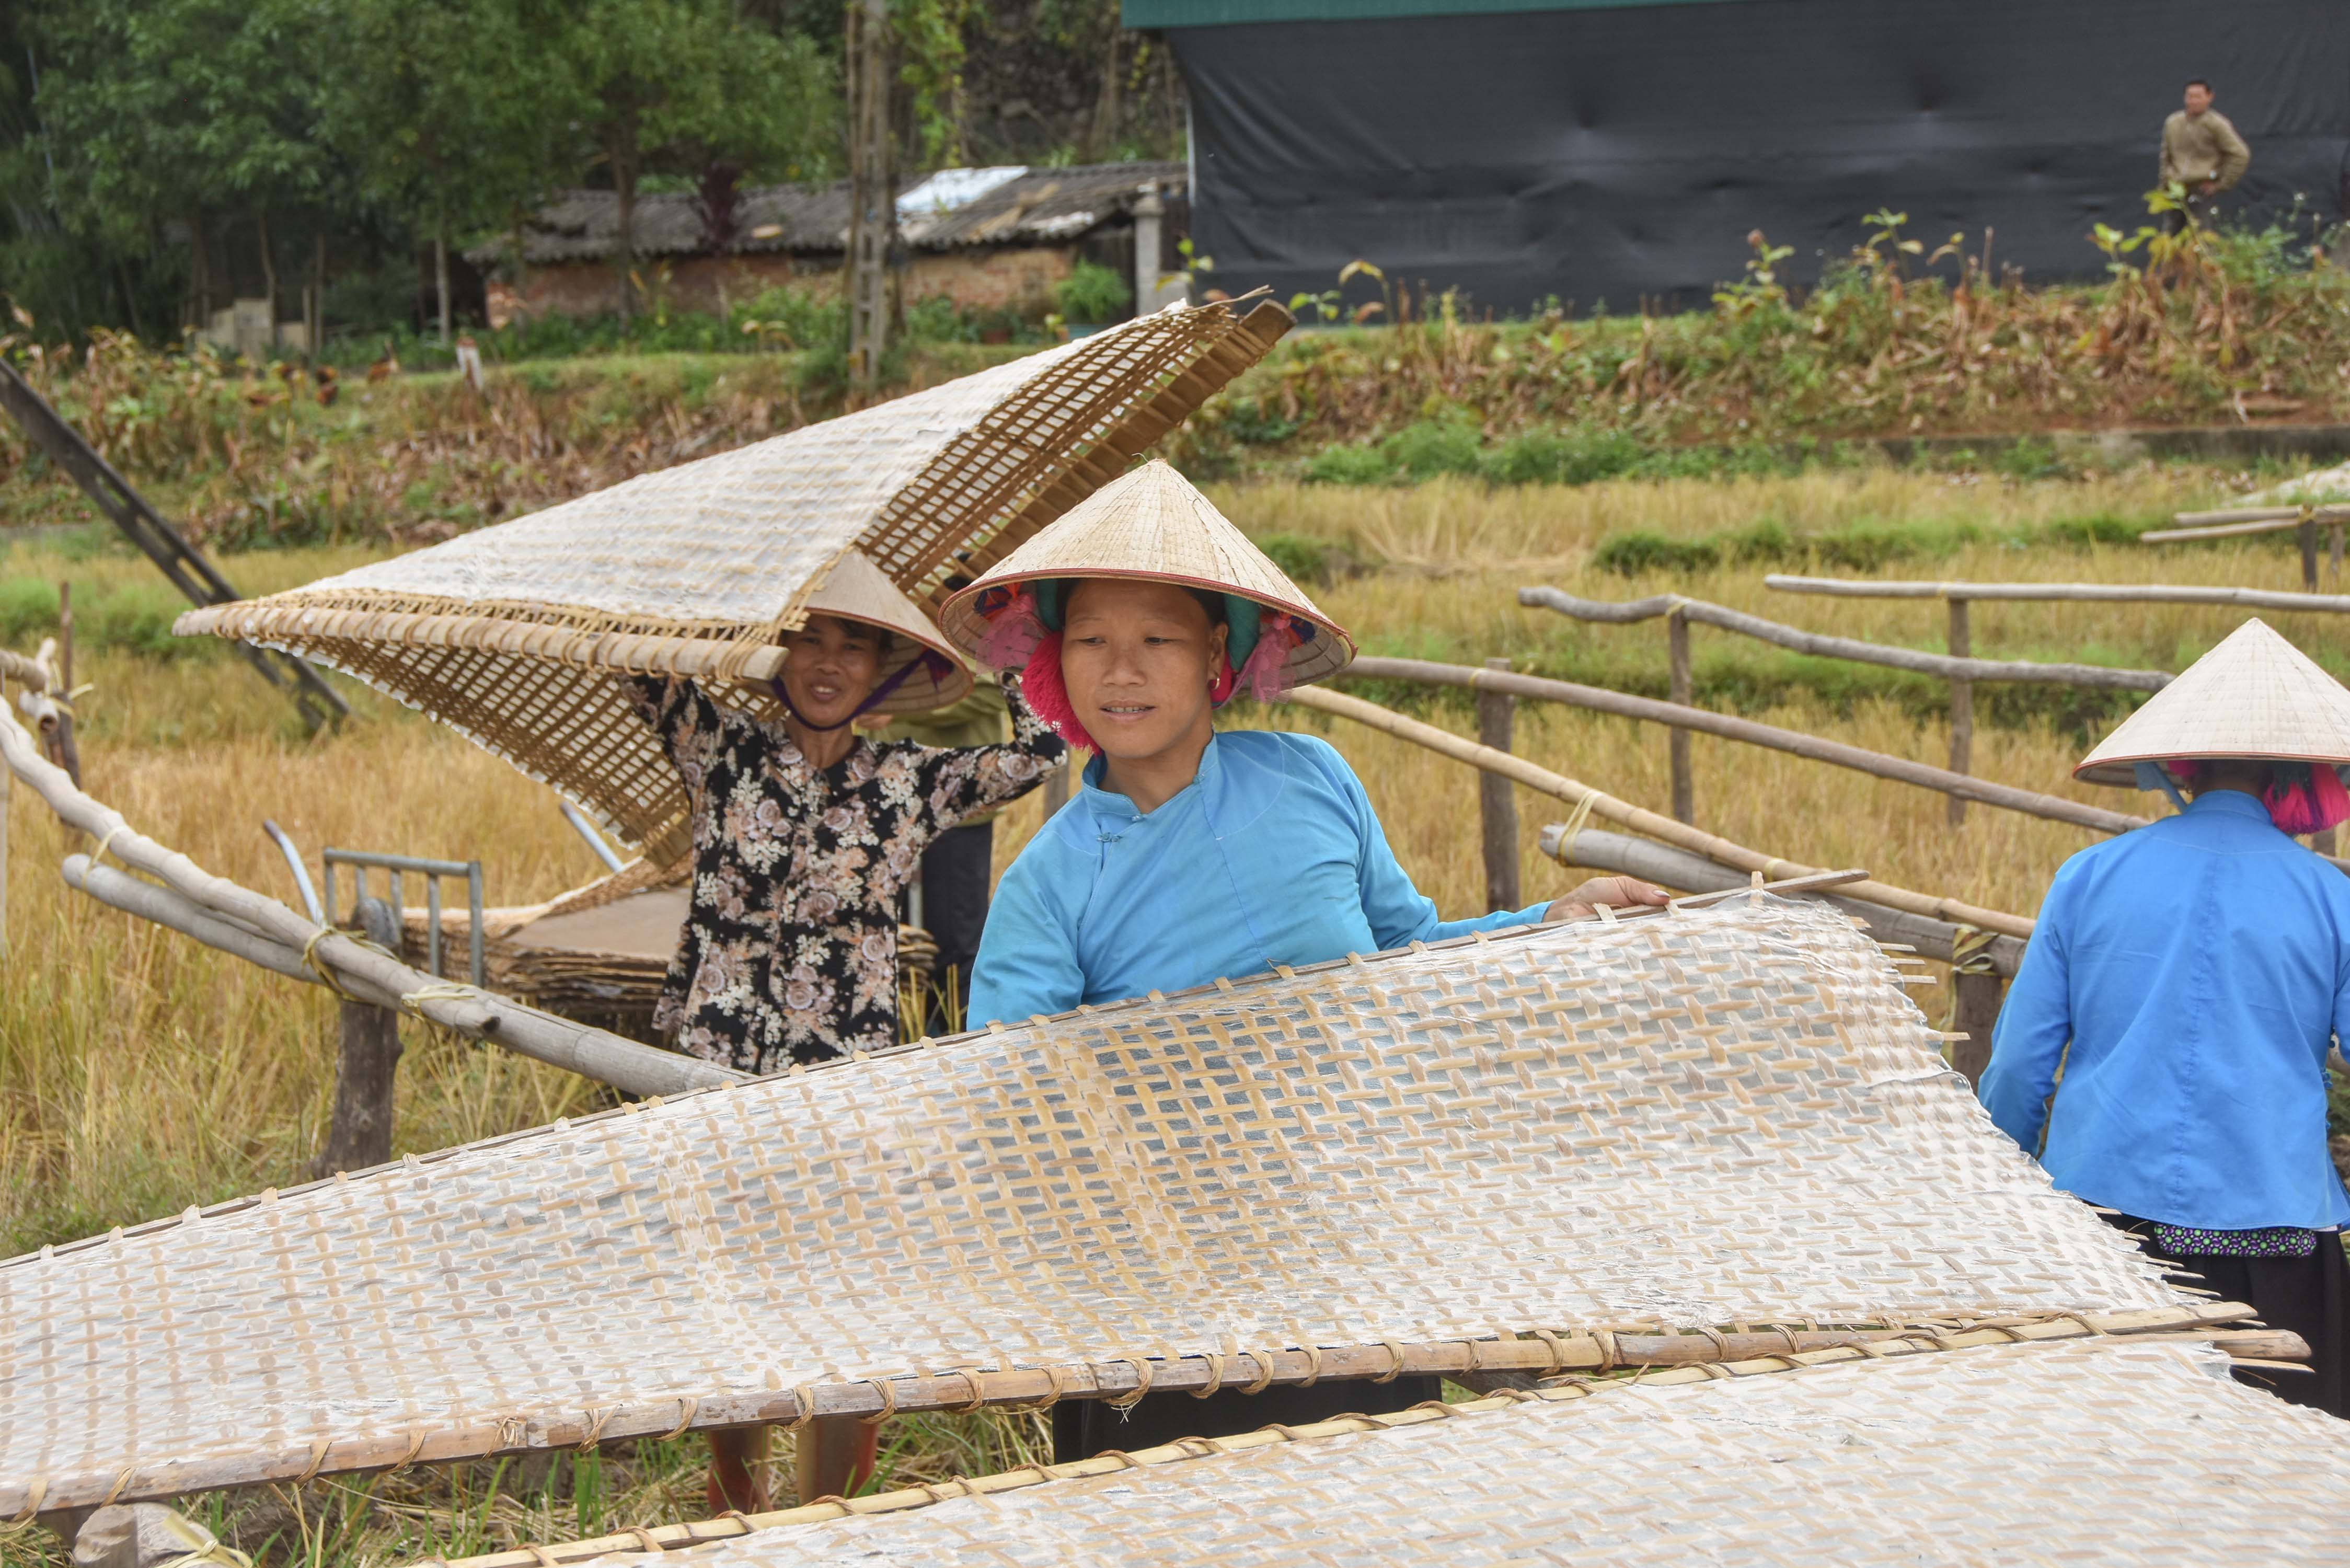 Nghề làm miến dong ở xã Húc Động (huyện Bình Liêu) theo mô hình hợp tác xã đã giúp nhiều gia đình thoát nghèo.